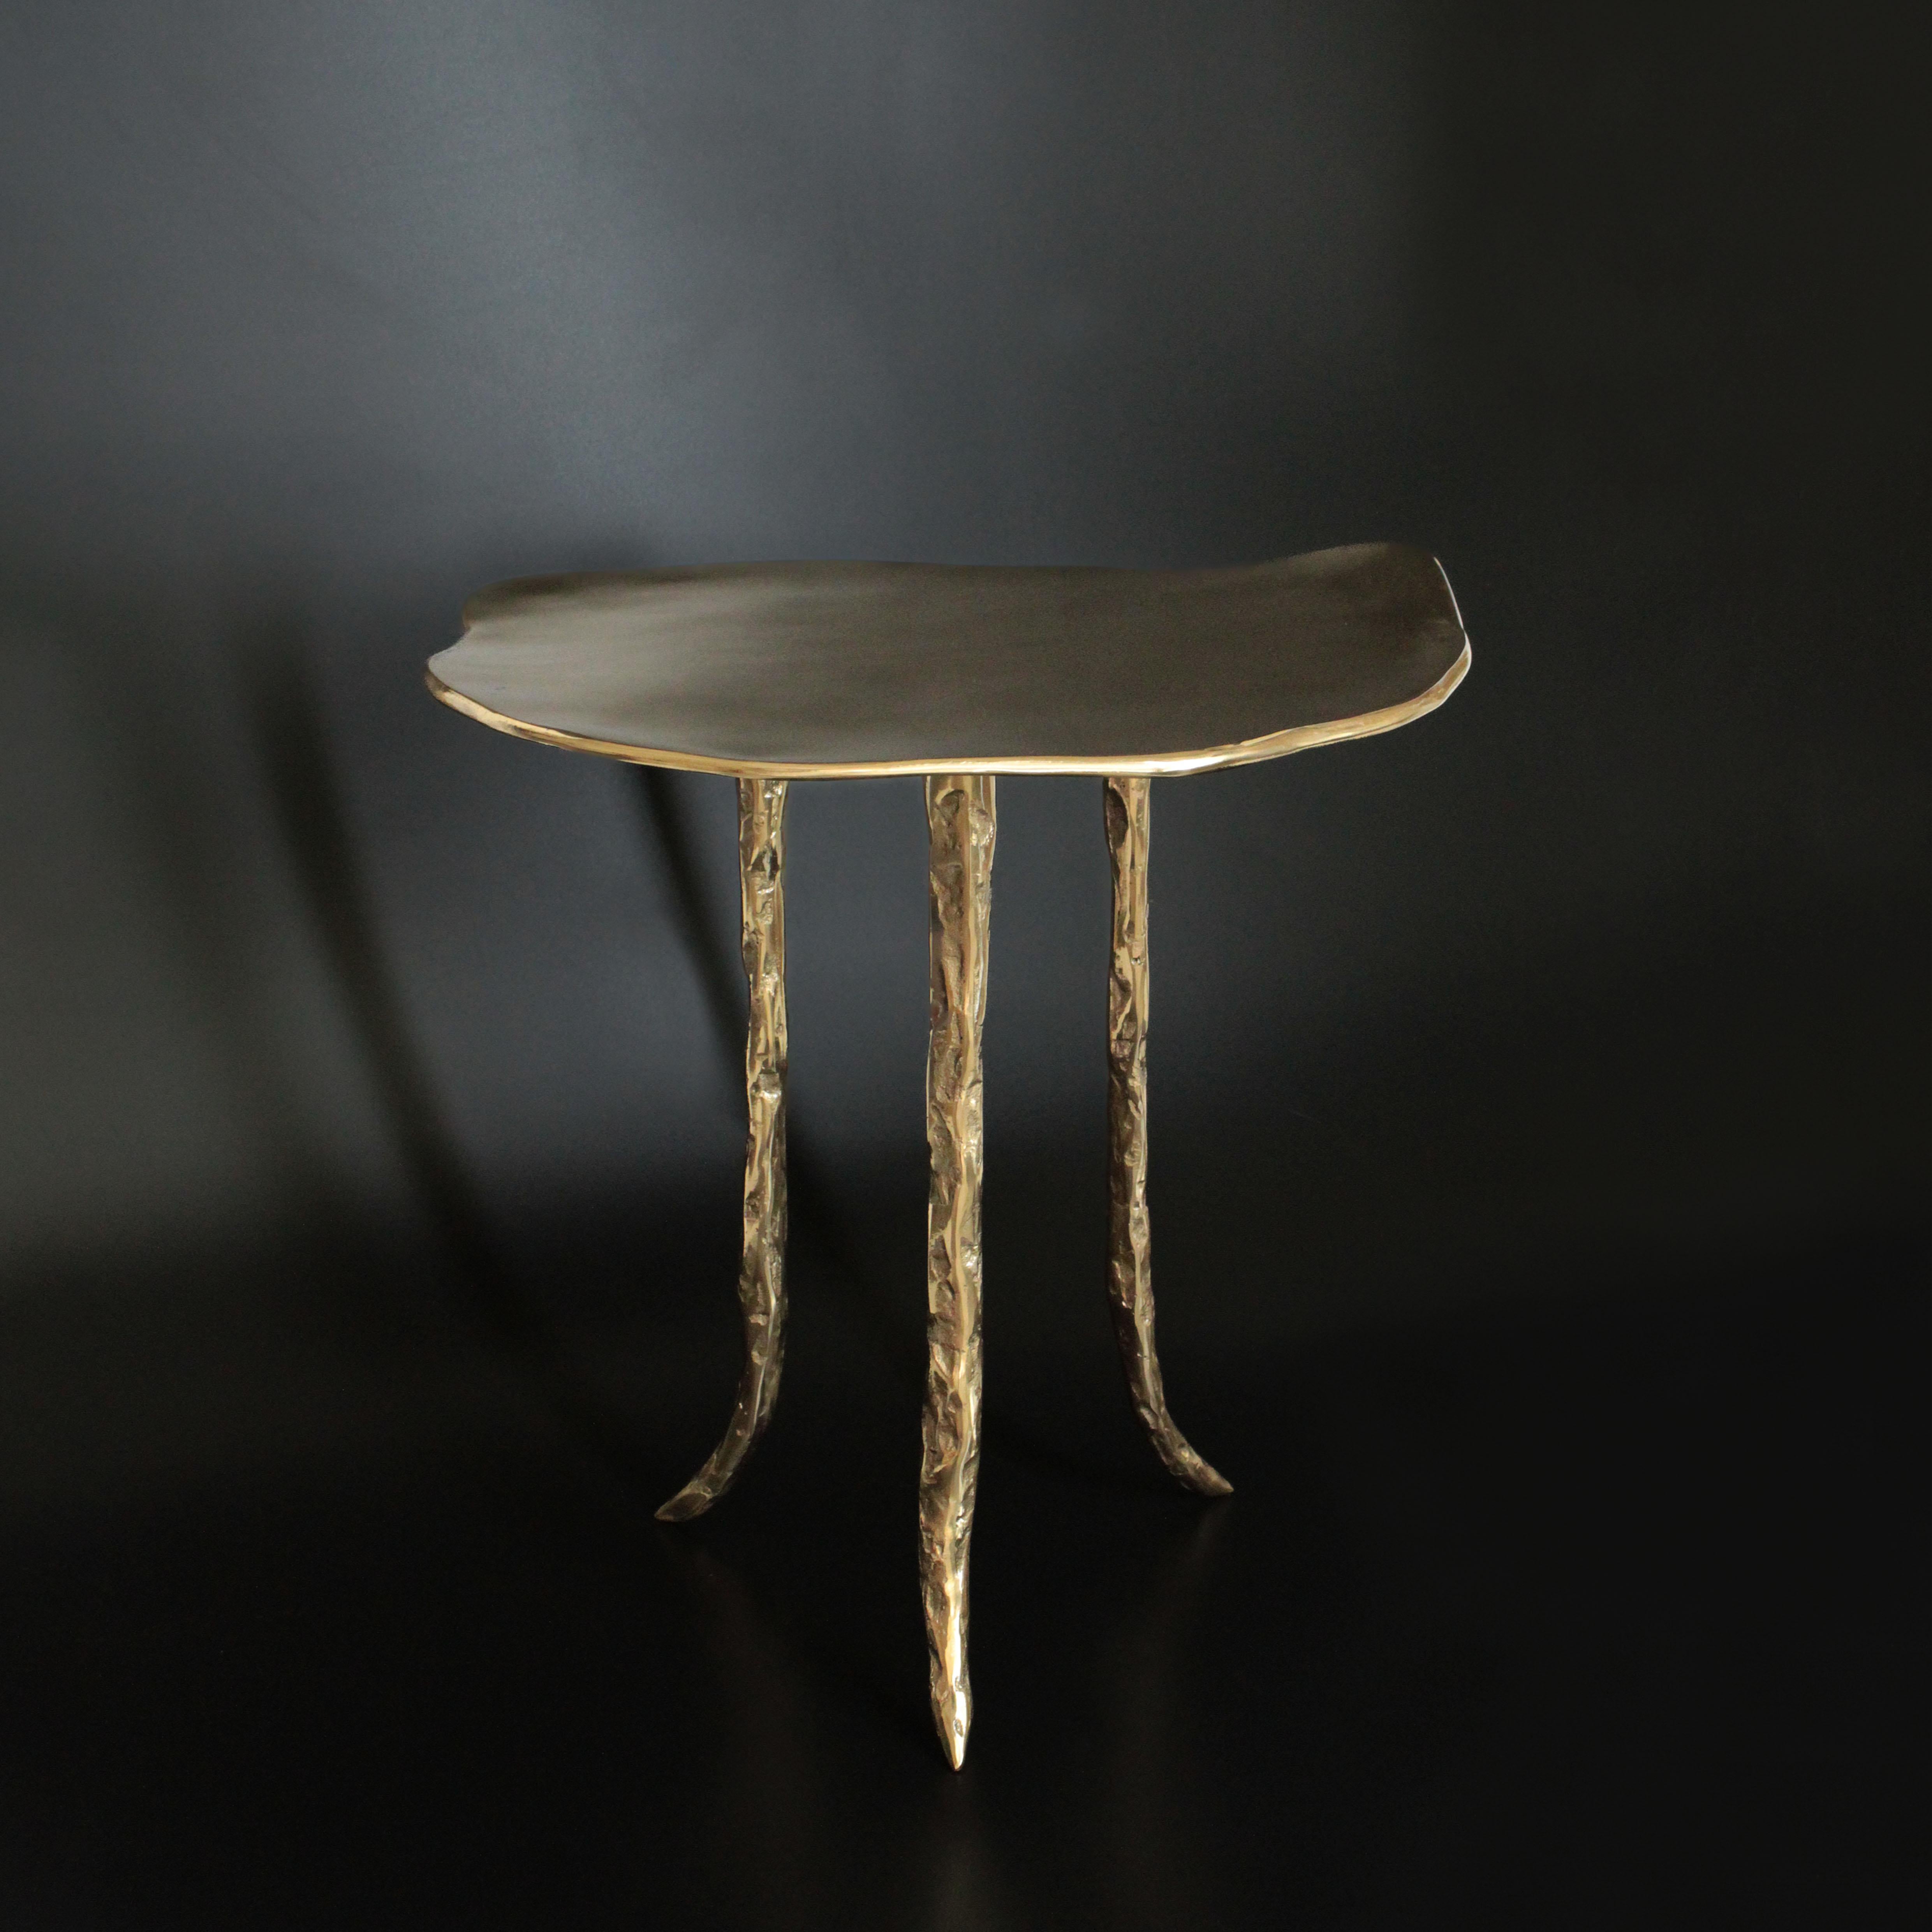 Mit ihren geschwungenen und skulpturalen Strukturen sind die Tische von Onda auf Qualität und Robustheit ausgelegt. Jedes Stück wird in Zusammenarbeit mit unseren talentierten Handwerkern in sorgfältiger Handarbeit aus Bronze gefertigt.

Bei der